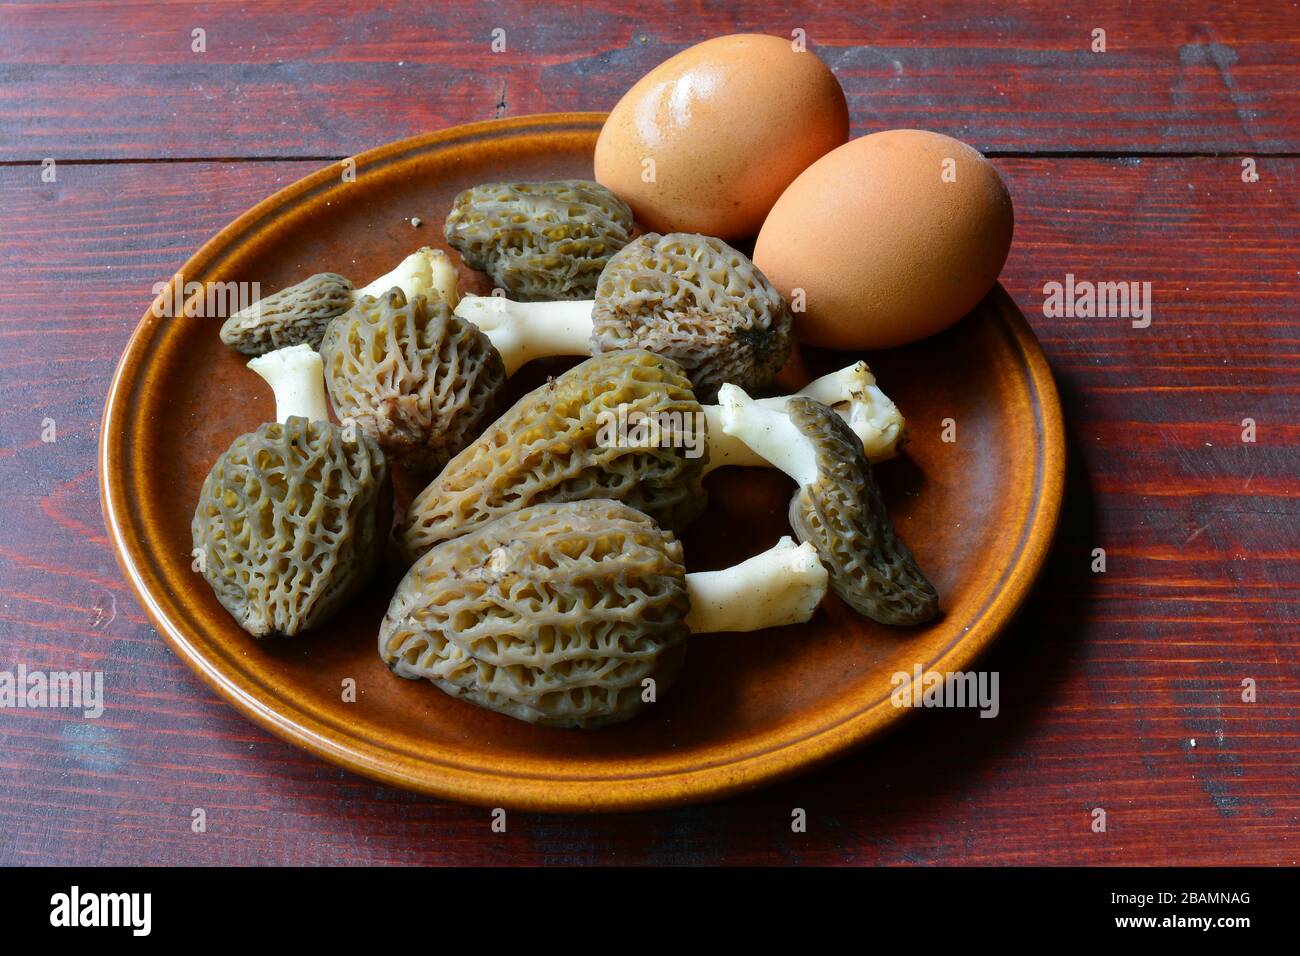 Les ingrédients du petit-déjeuner de Forester, huit morels noirs et des œufs en céramique rustique brune sur une table en acajou Banque D'Images